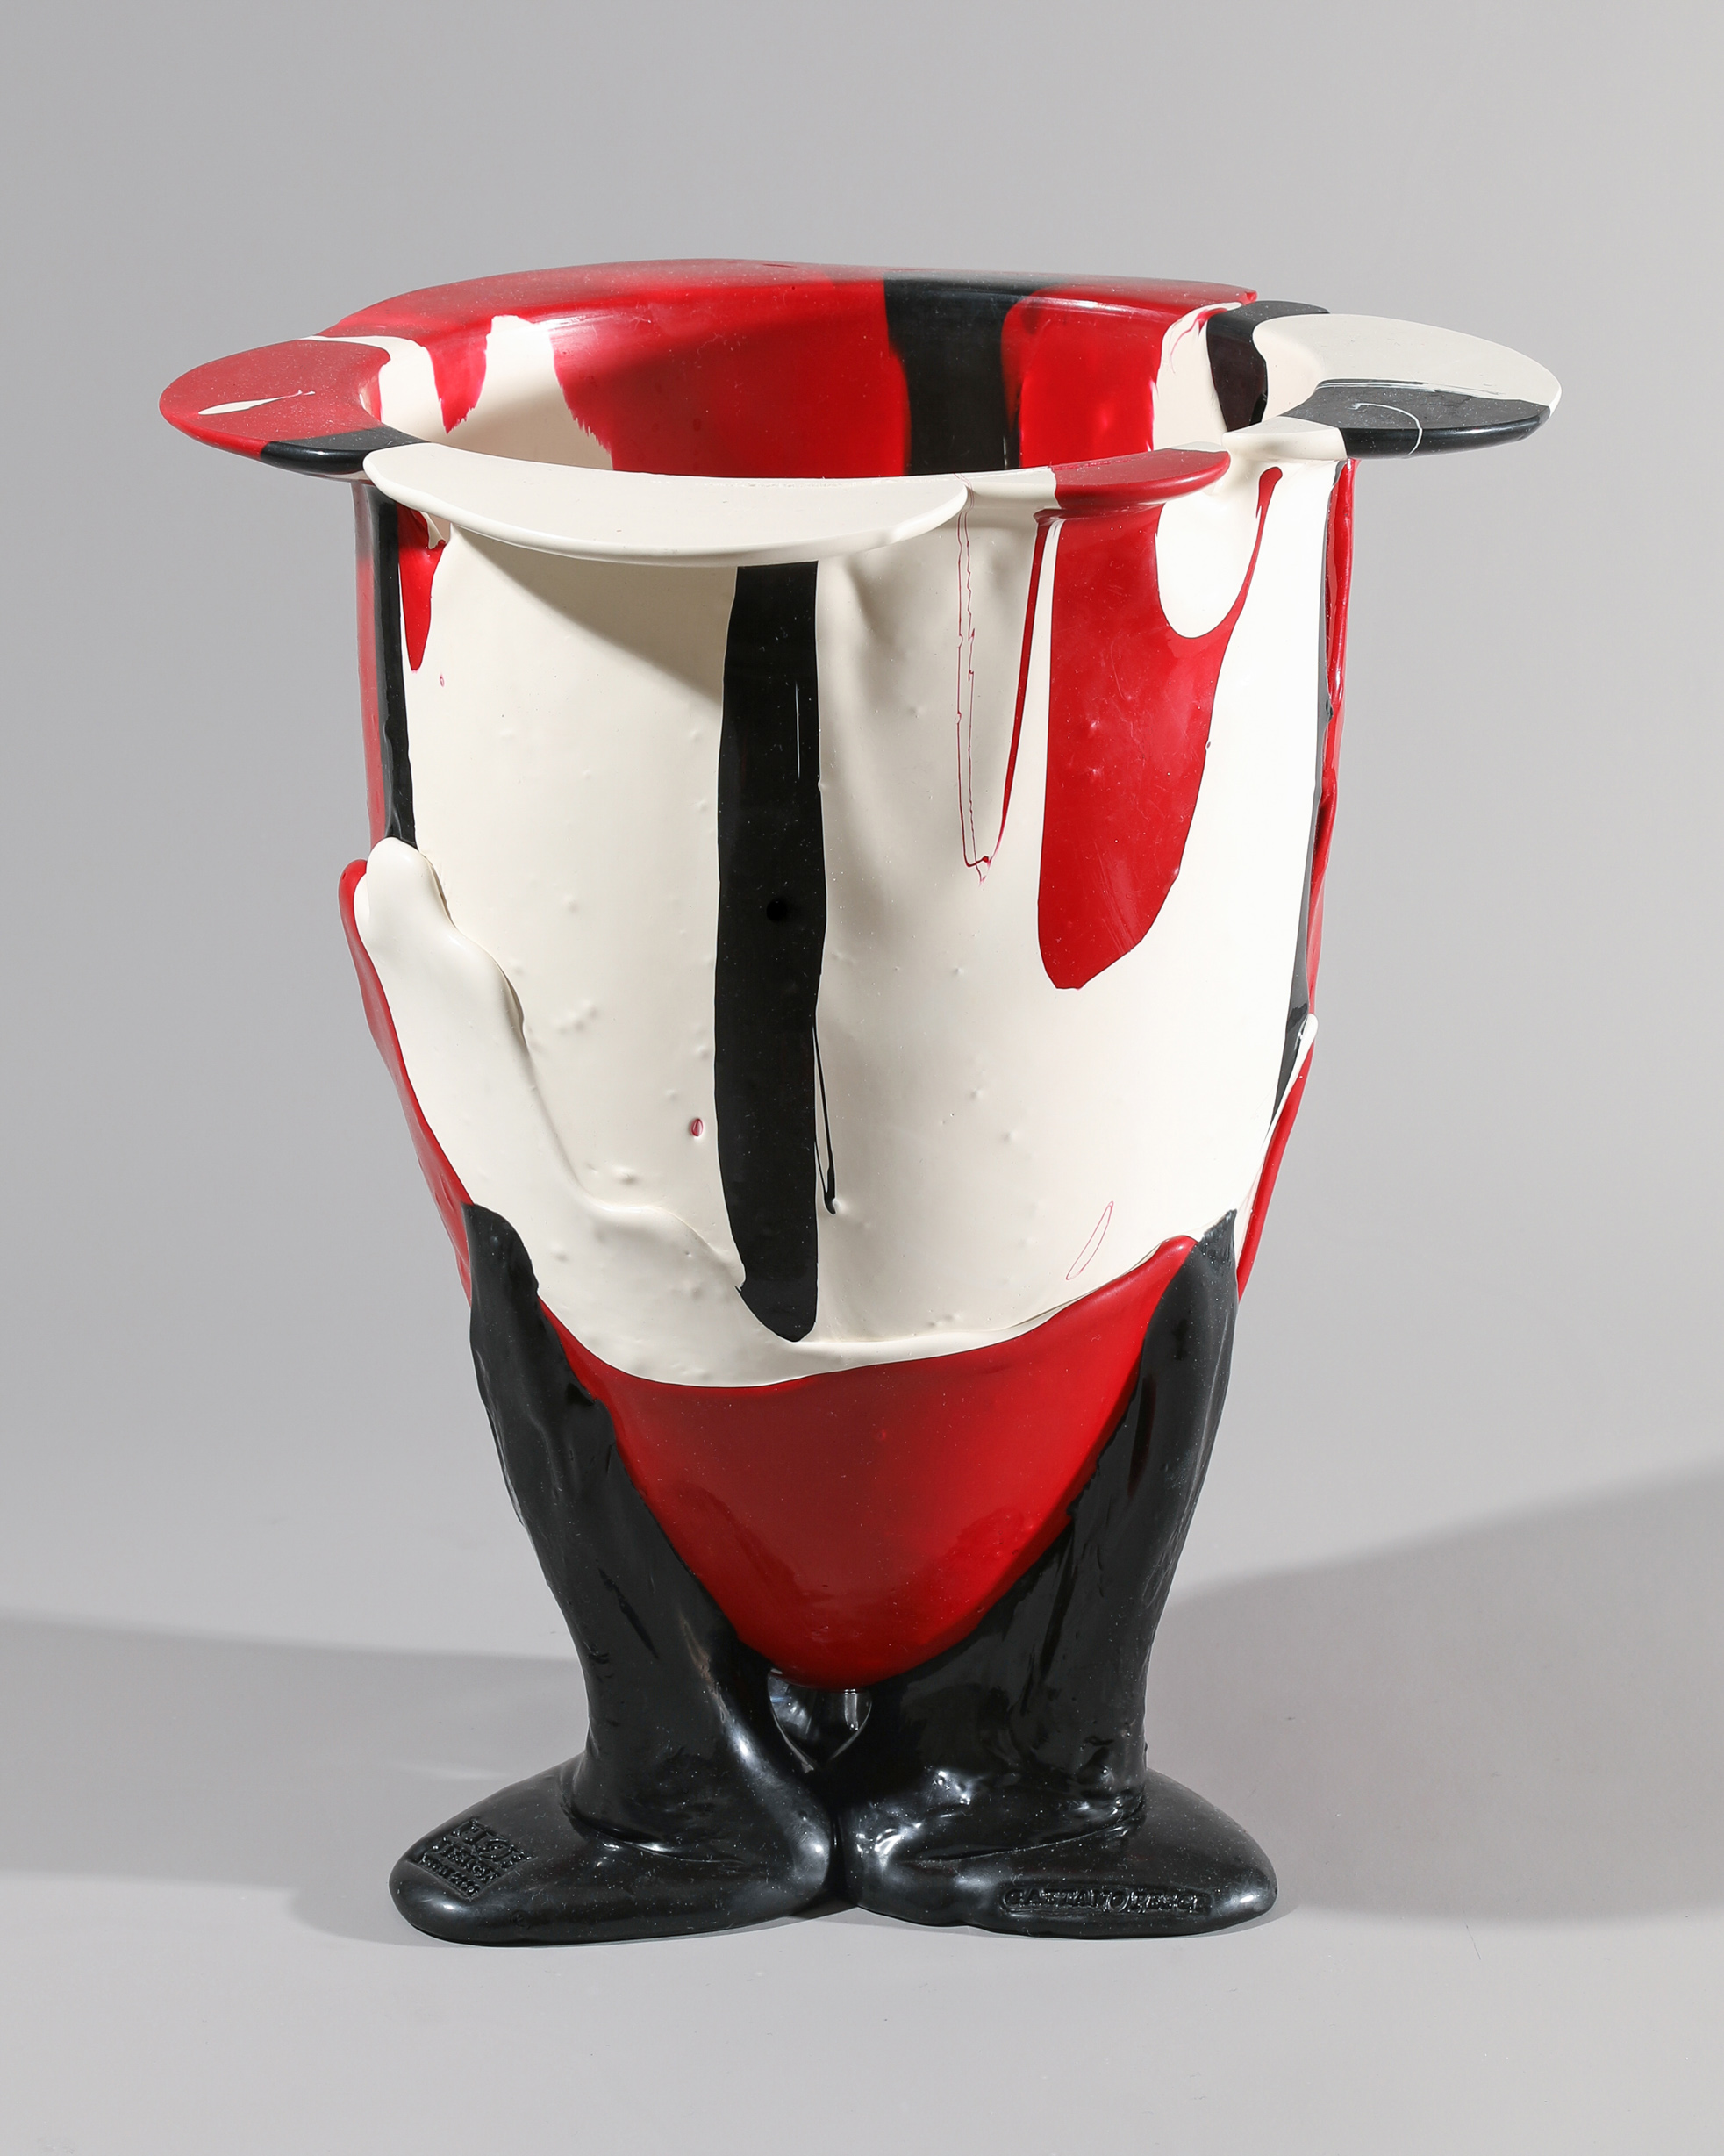 Gaetano Pesce, Fish Design, large Vase, model Amazonia